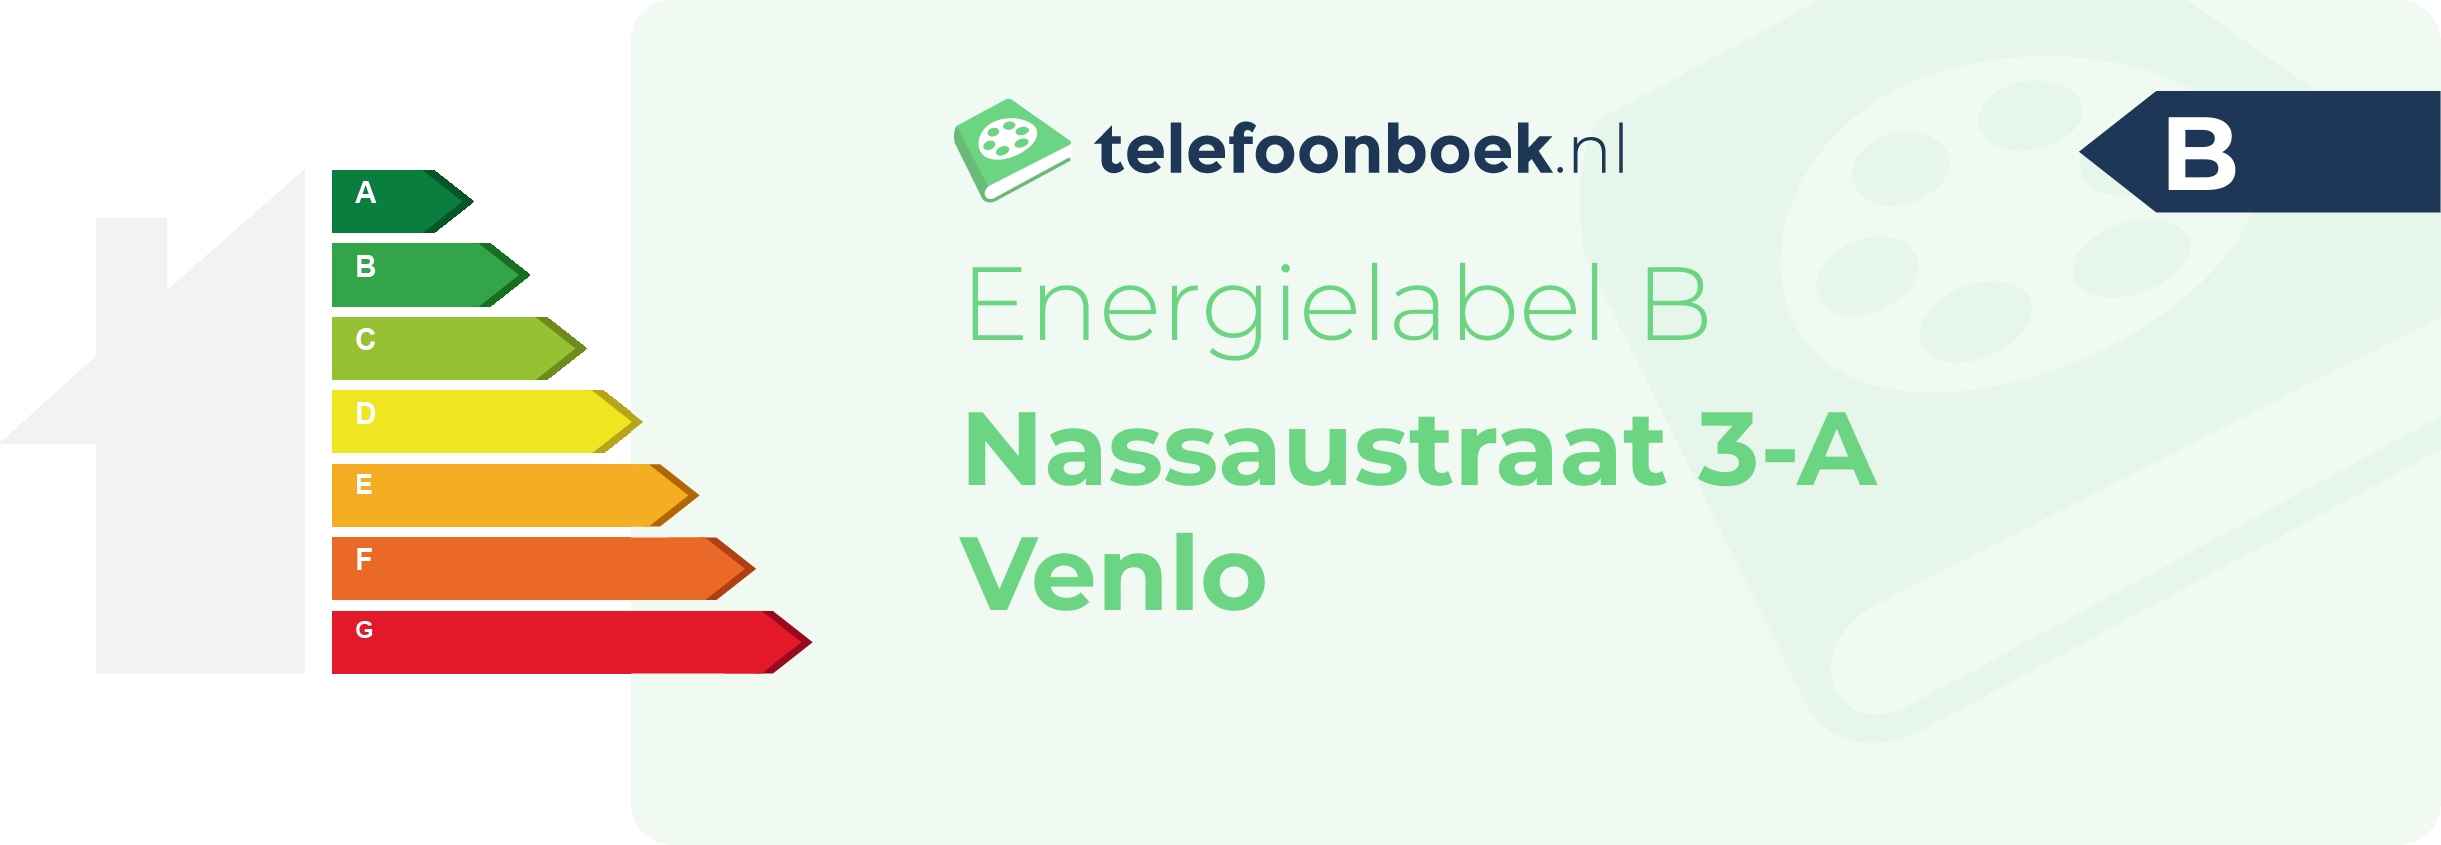 Energielabel Nassaustraat 3-A Venlo